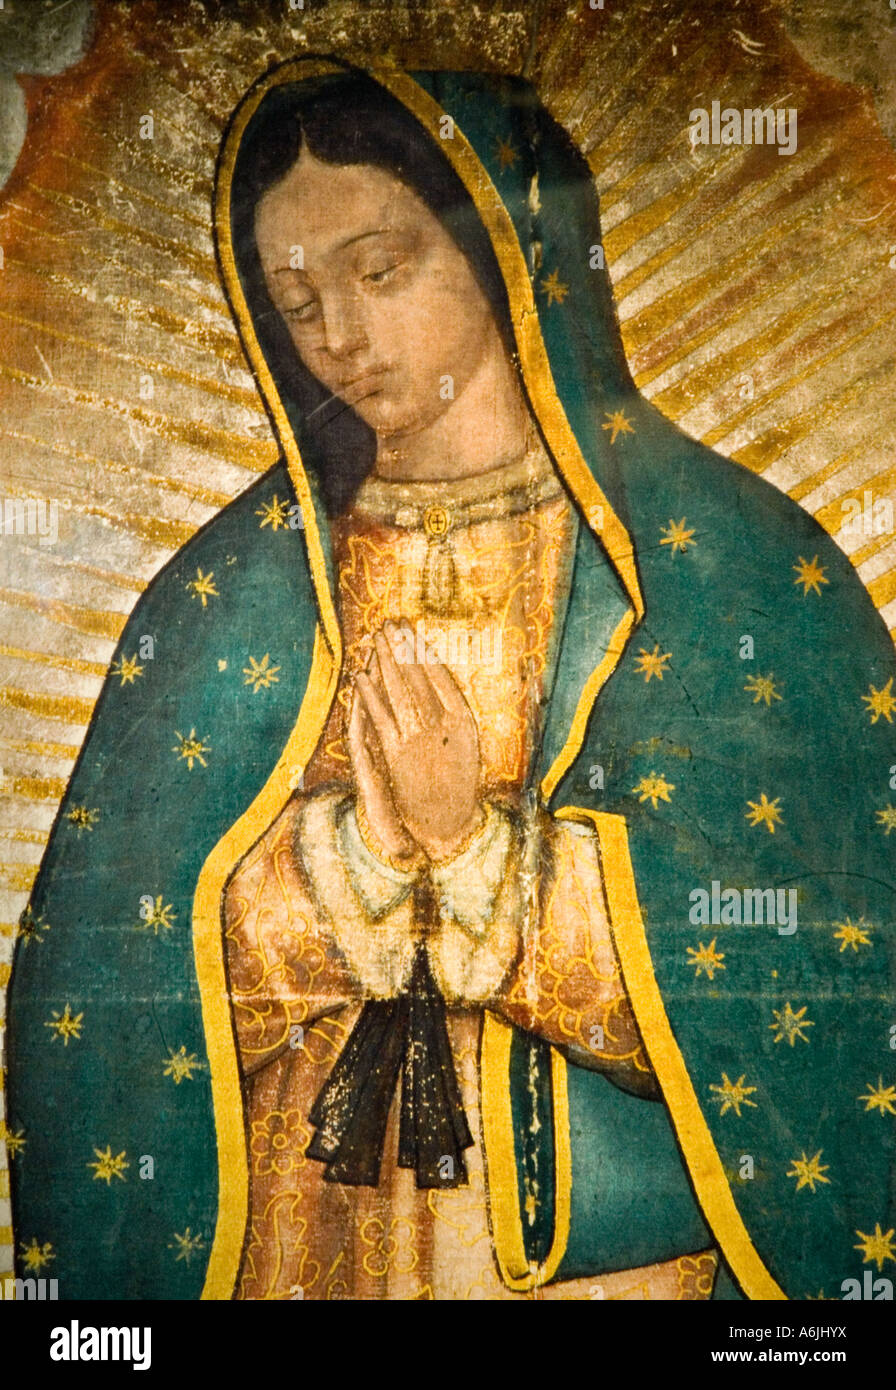 Virgen de guadalupe mexico fotografías e imágenes de alta resolución - Alamy